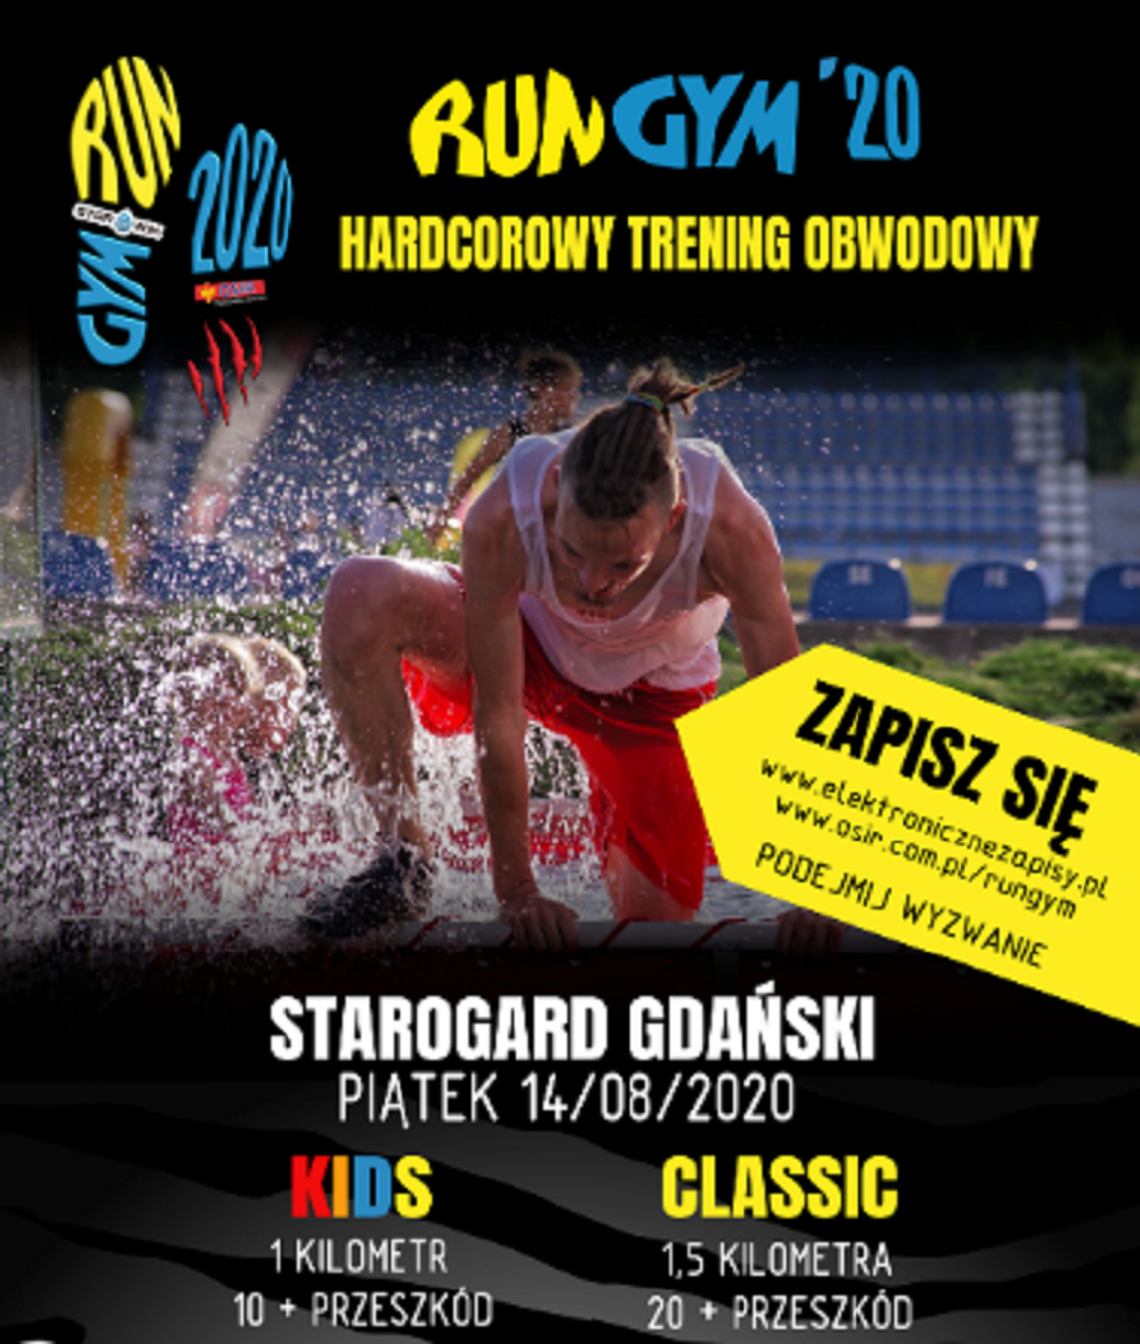 Hardcorowy trening obwodowy w Starogardzie Gdańskim - Run Gym odbędzie się już 14 sierpnia